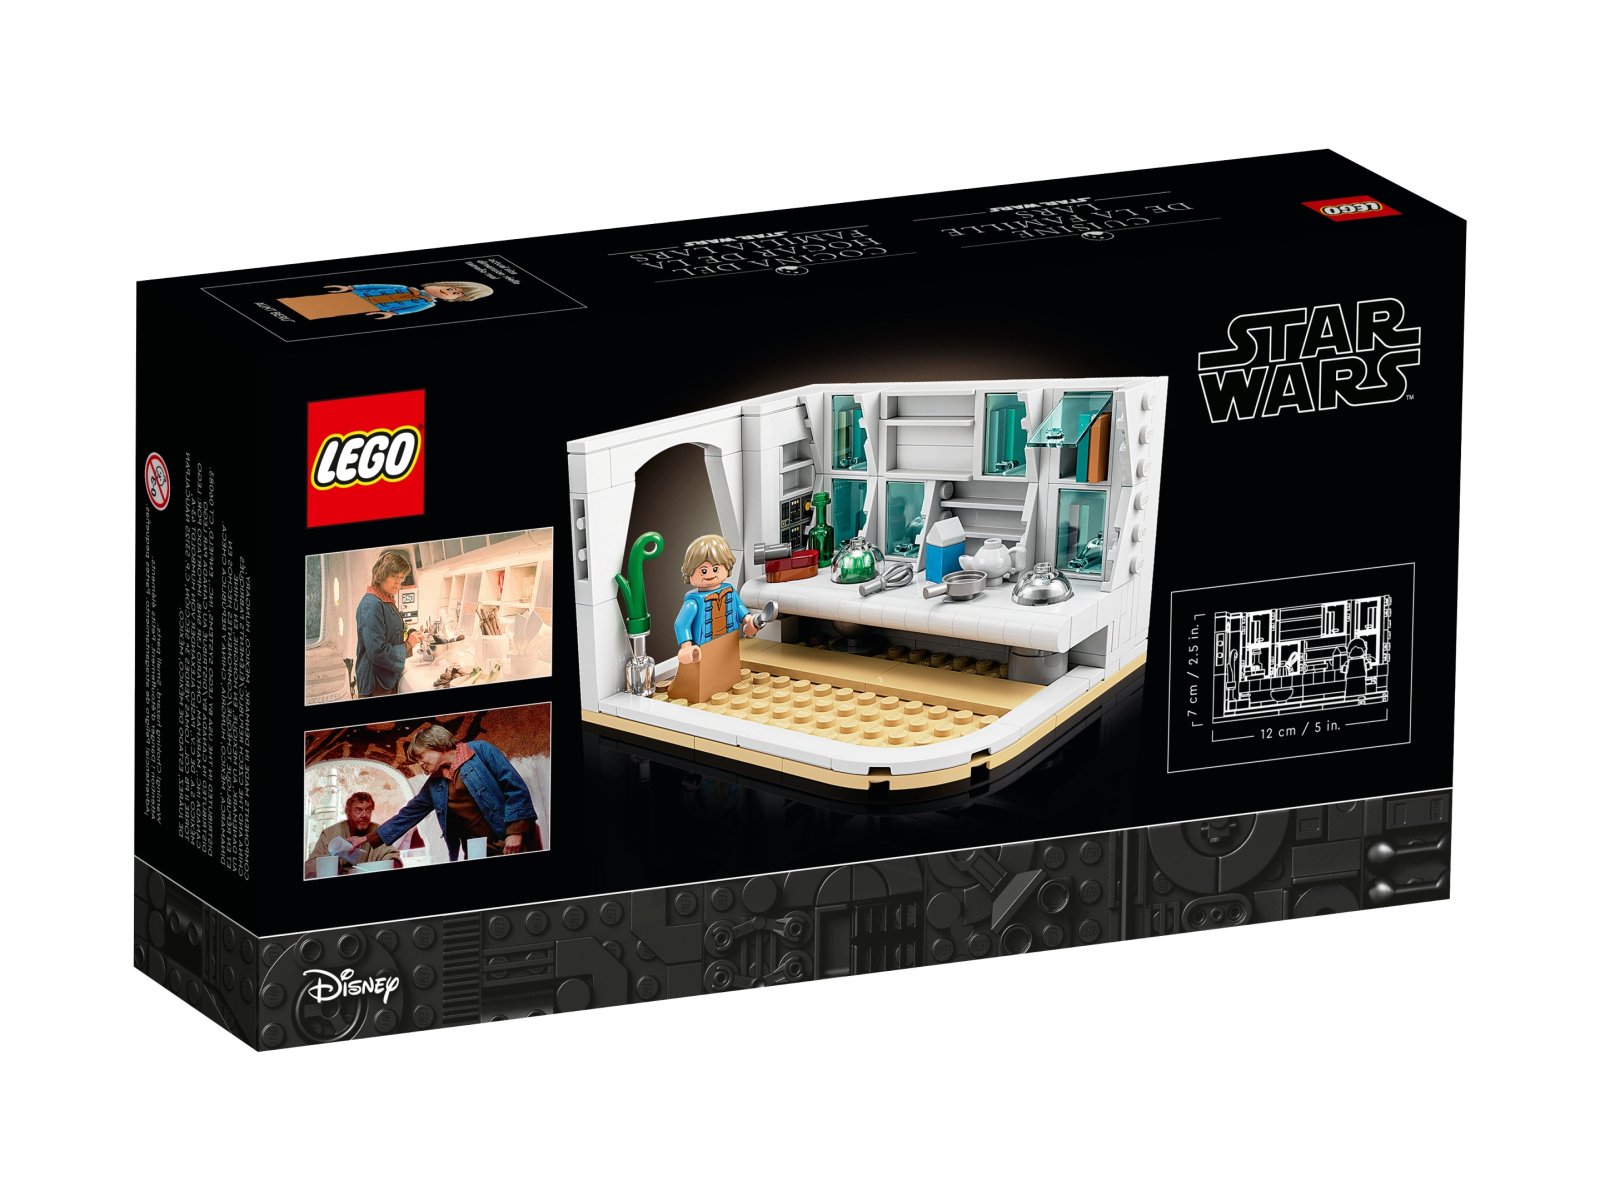 LEGO Star Wars 40531 Kuchnia rodziny Larsów